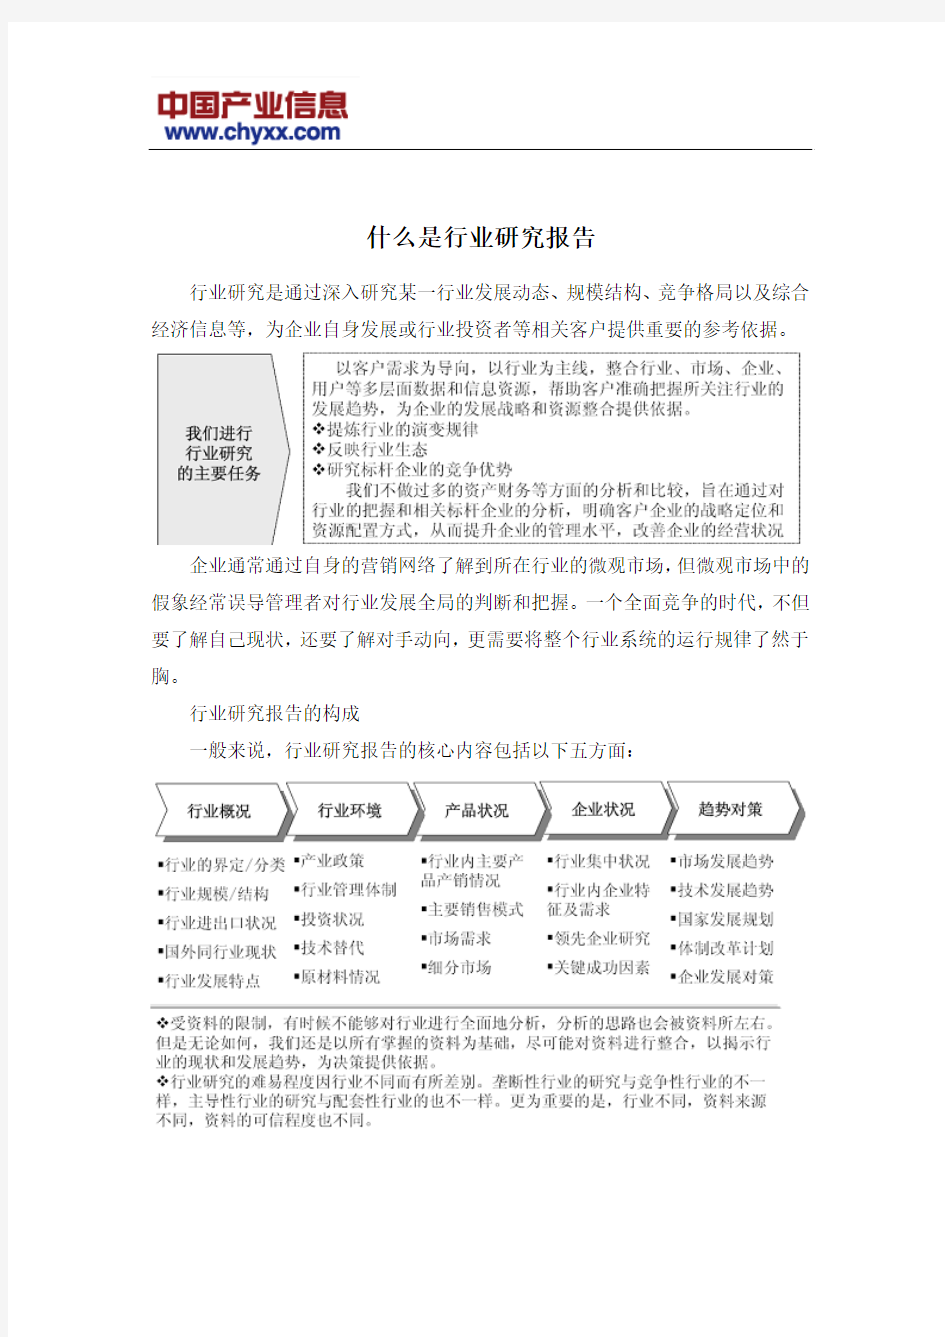 2016-2022年中国碳酸氢钠(小苏打)市场供需预测研究报告